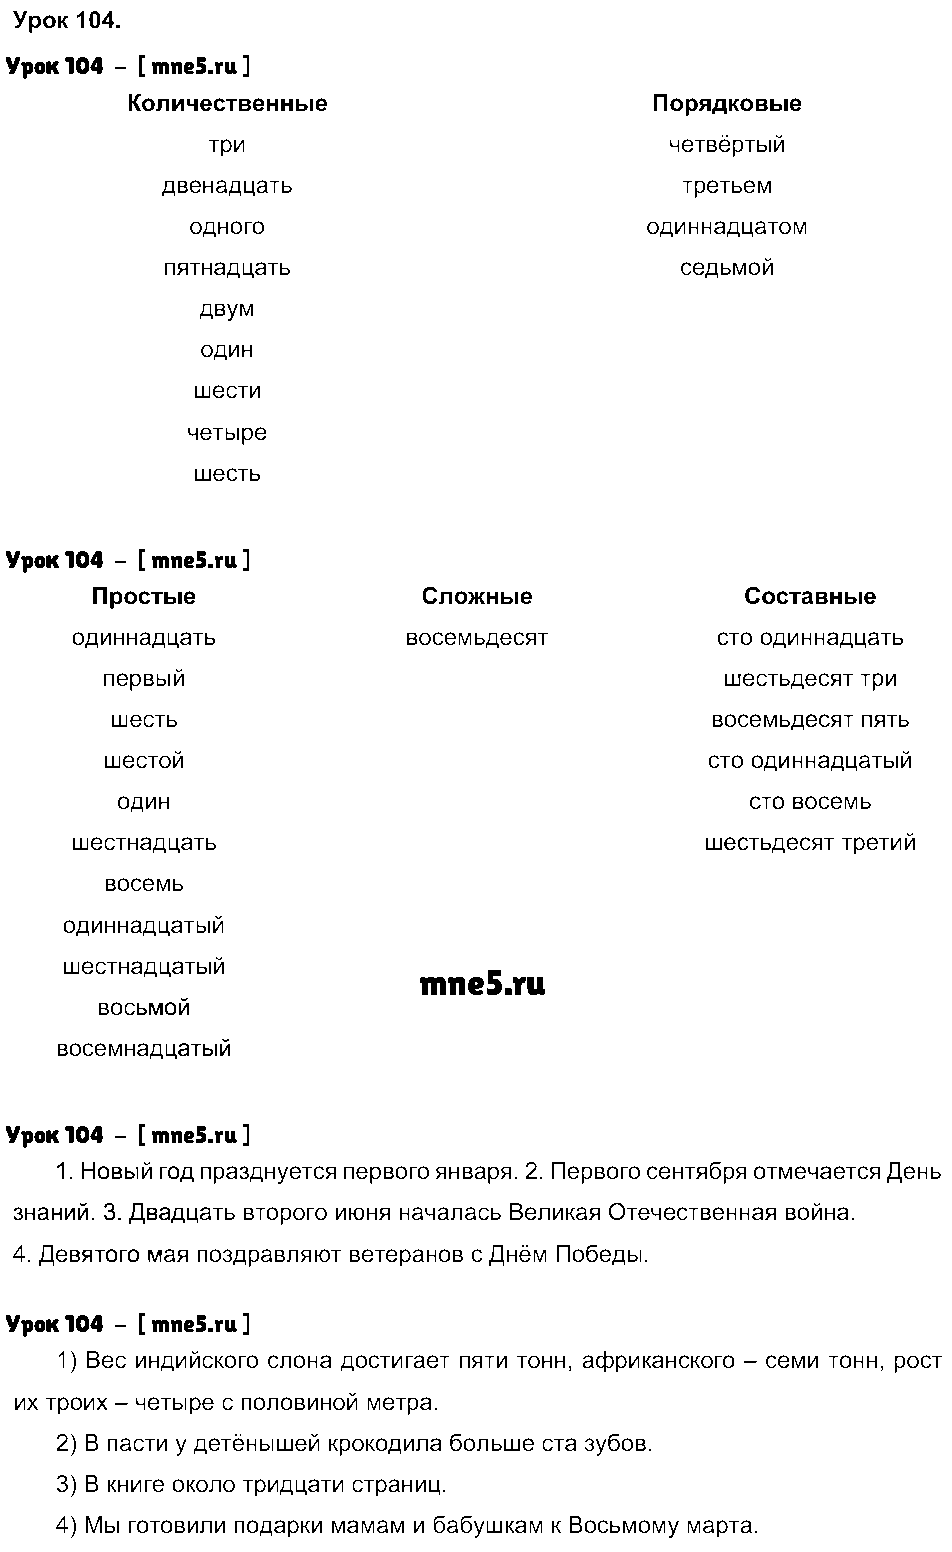 ГДЗ Русский язык 4 класс - Урок 104